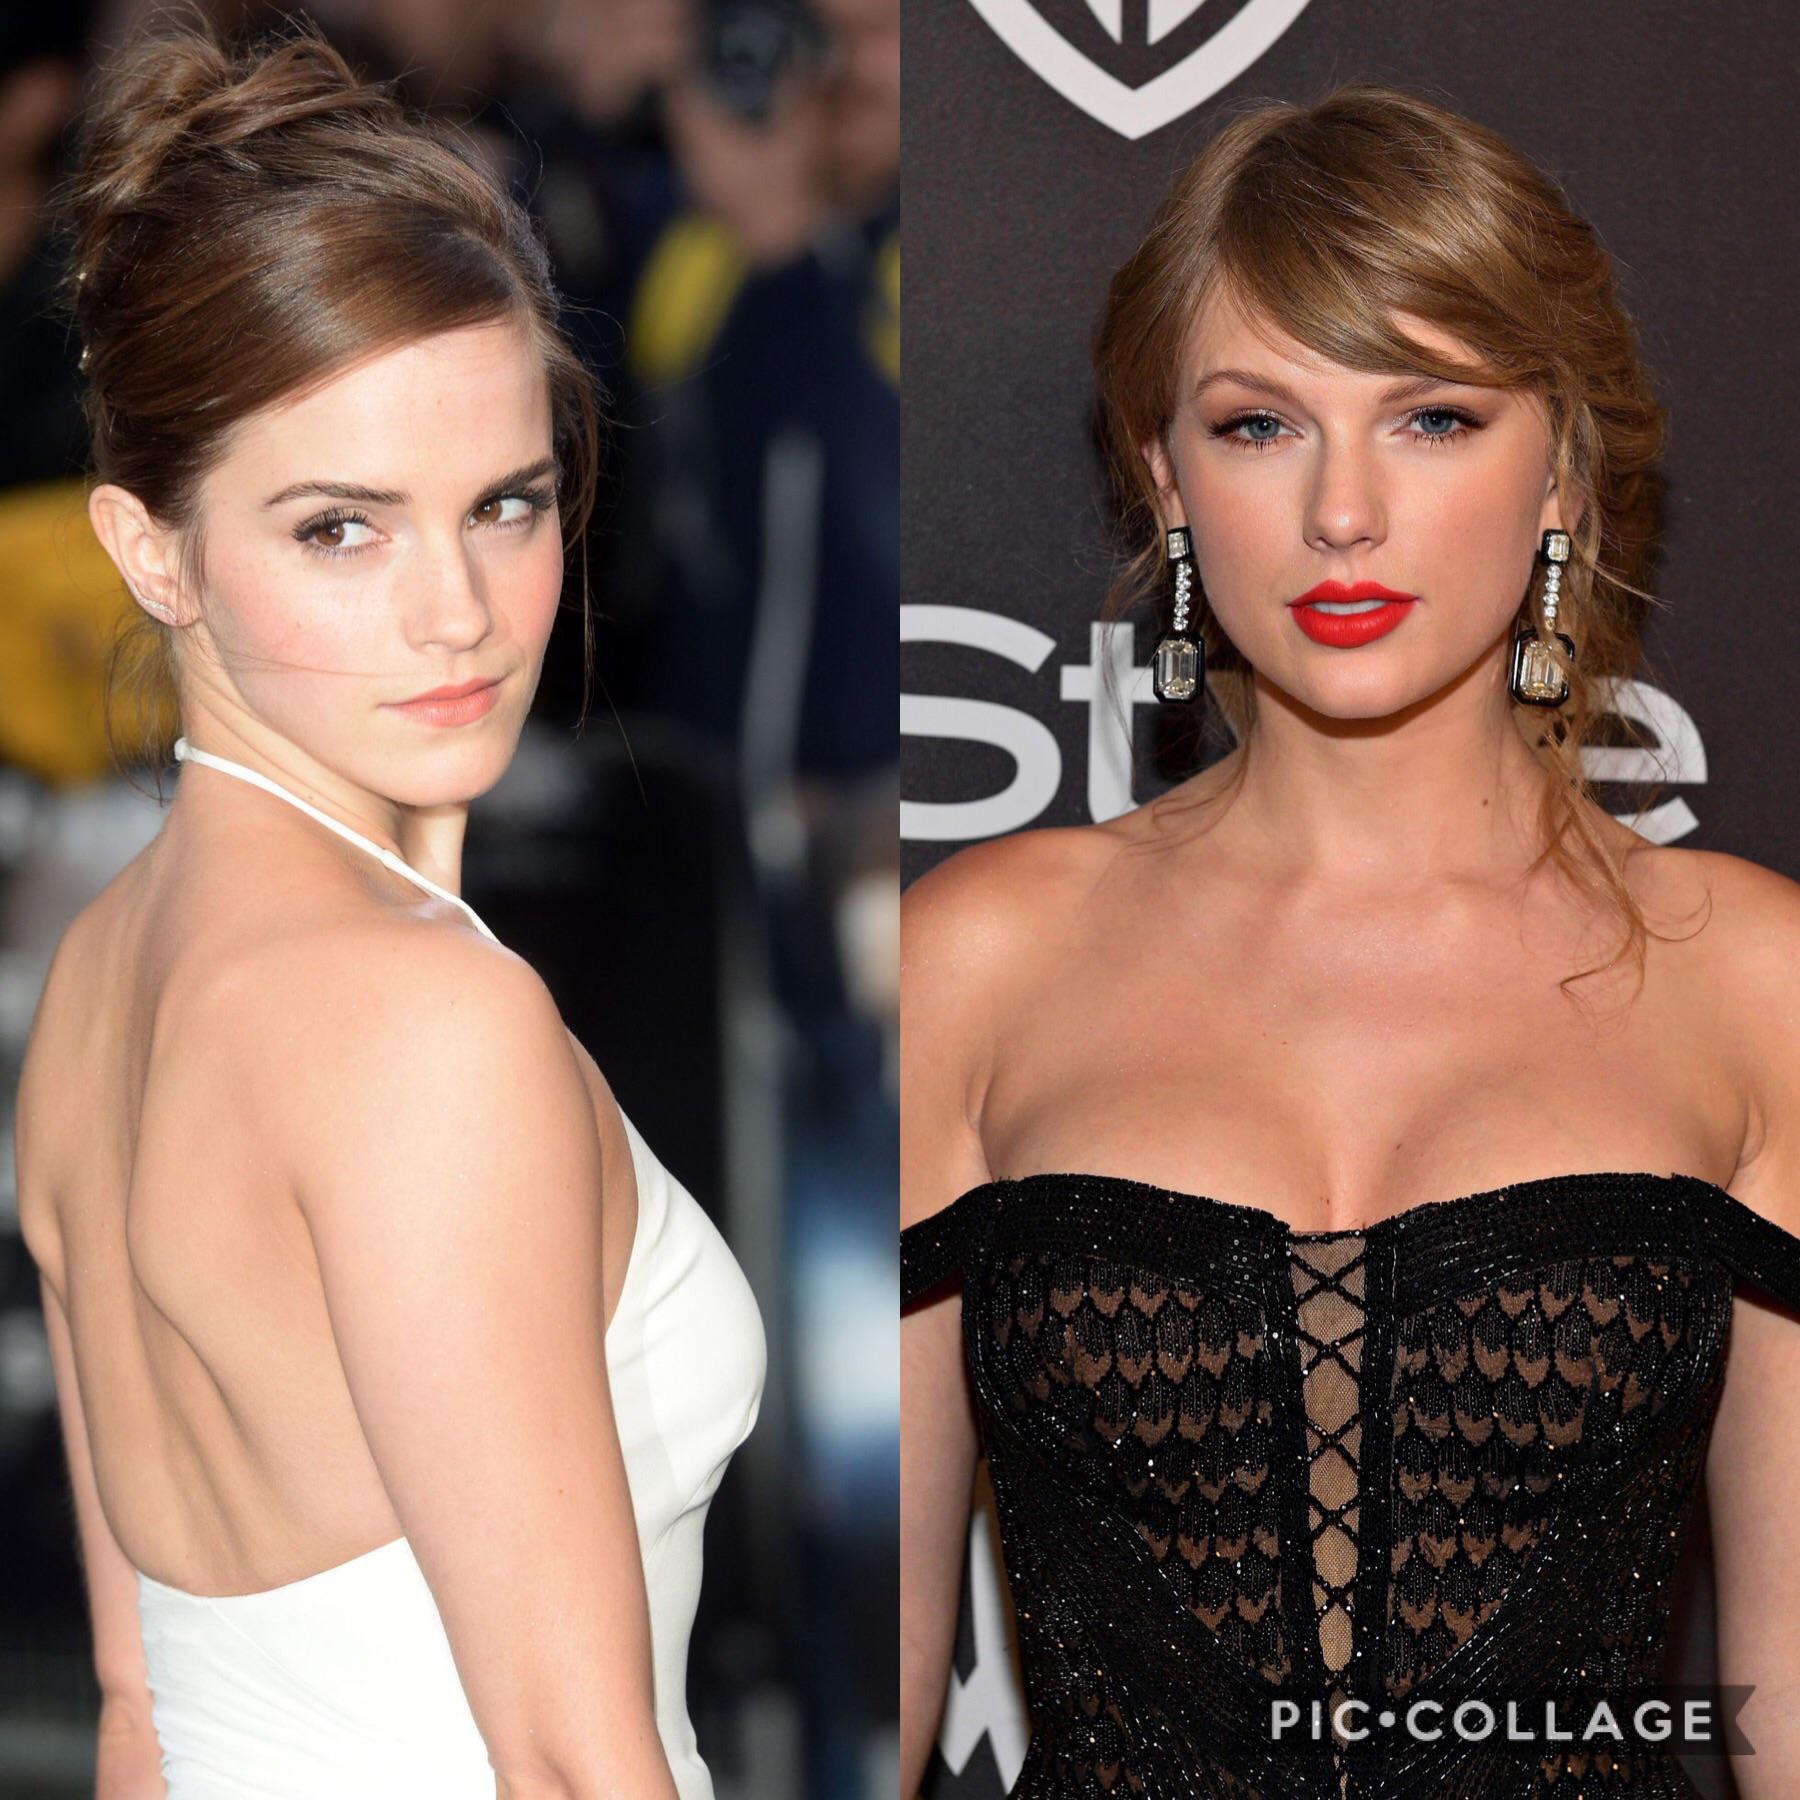 Reddit nudes emma leaked watson Emma Watson